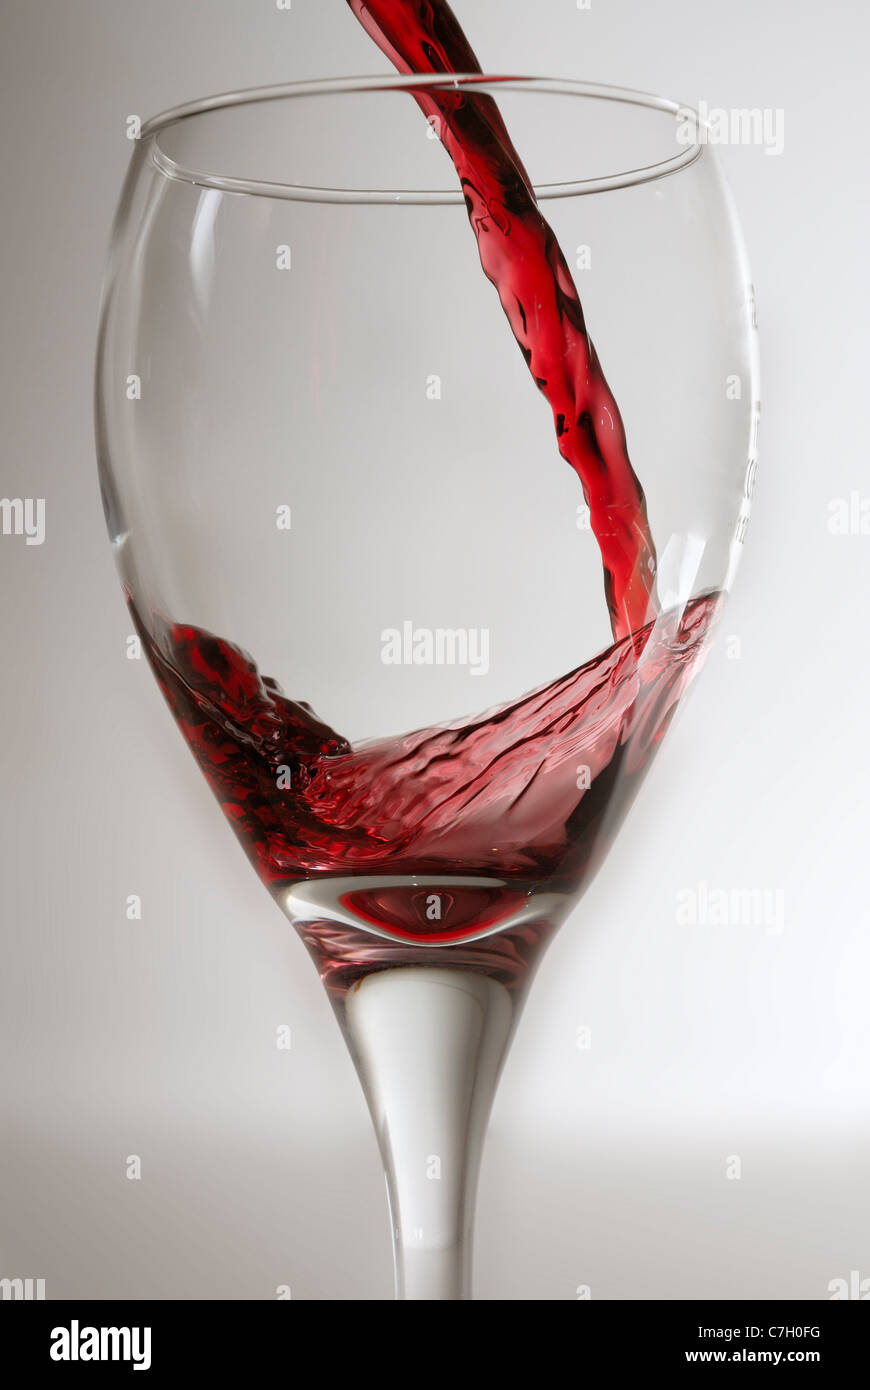 El vino tinto que se vierte en una copa de vino limpio contra un gris de procedencia. Foto de stock